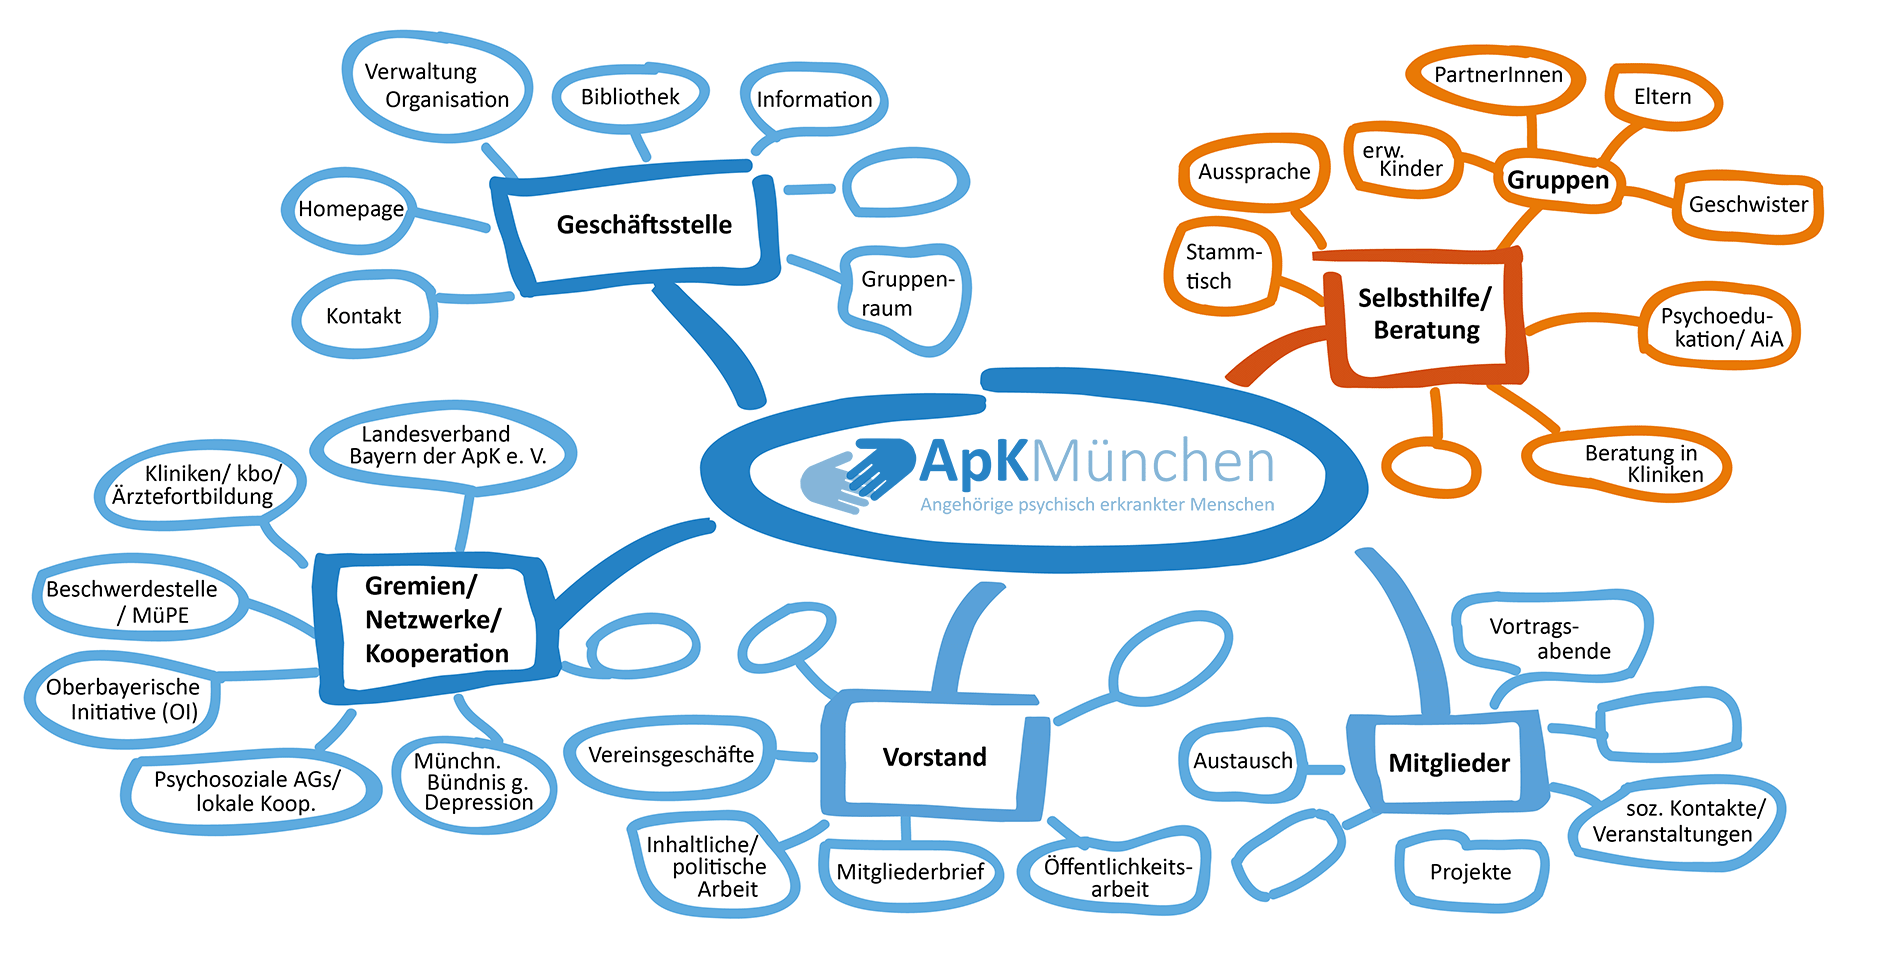 Grafische Darstellung der Apk-Tätigkeiten und Vernetzungen